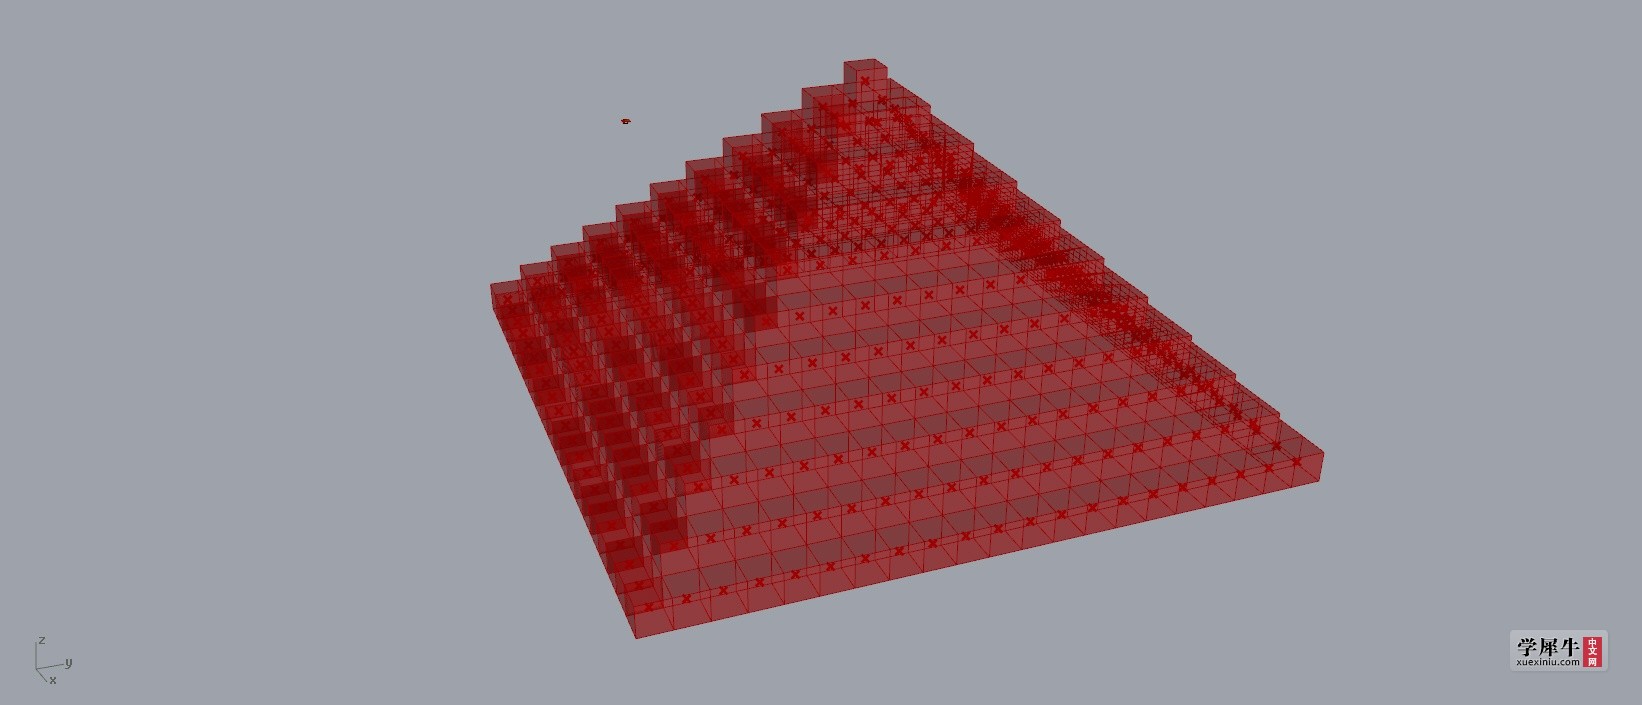 金字塔砖排布.jpg